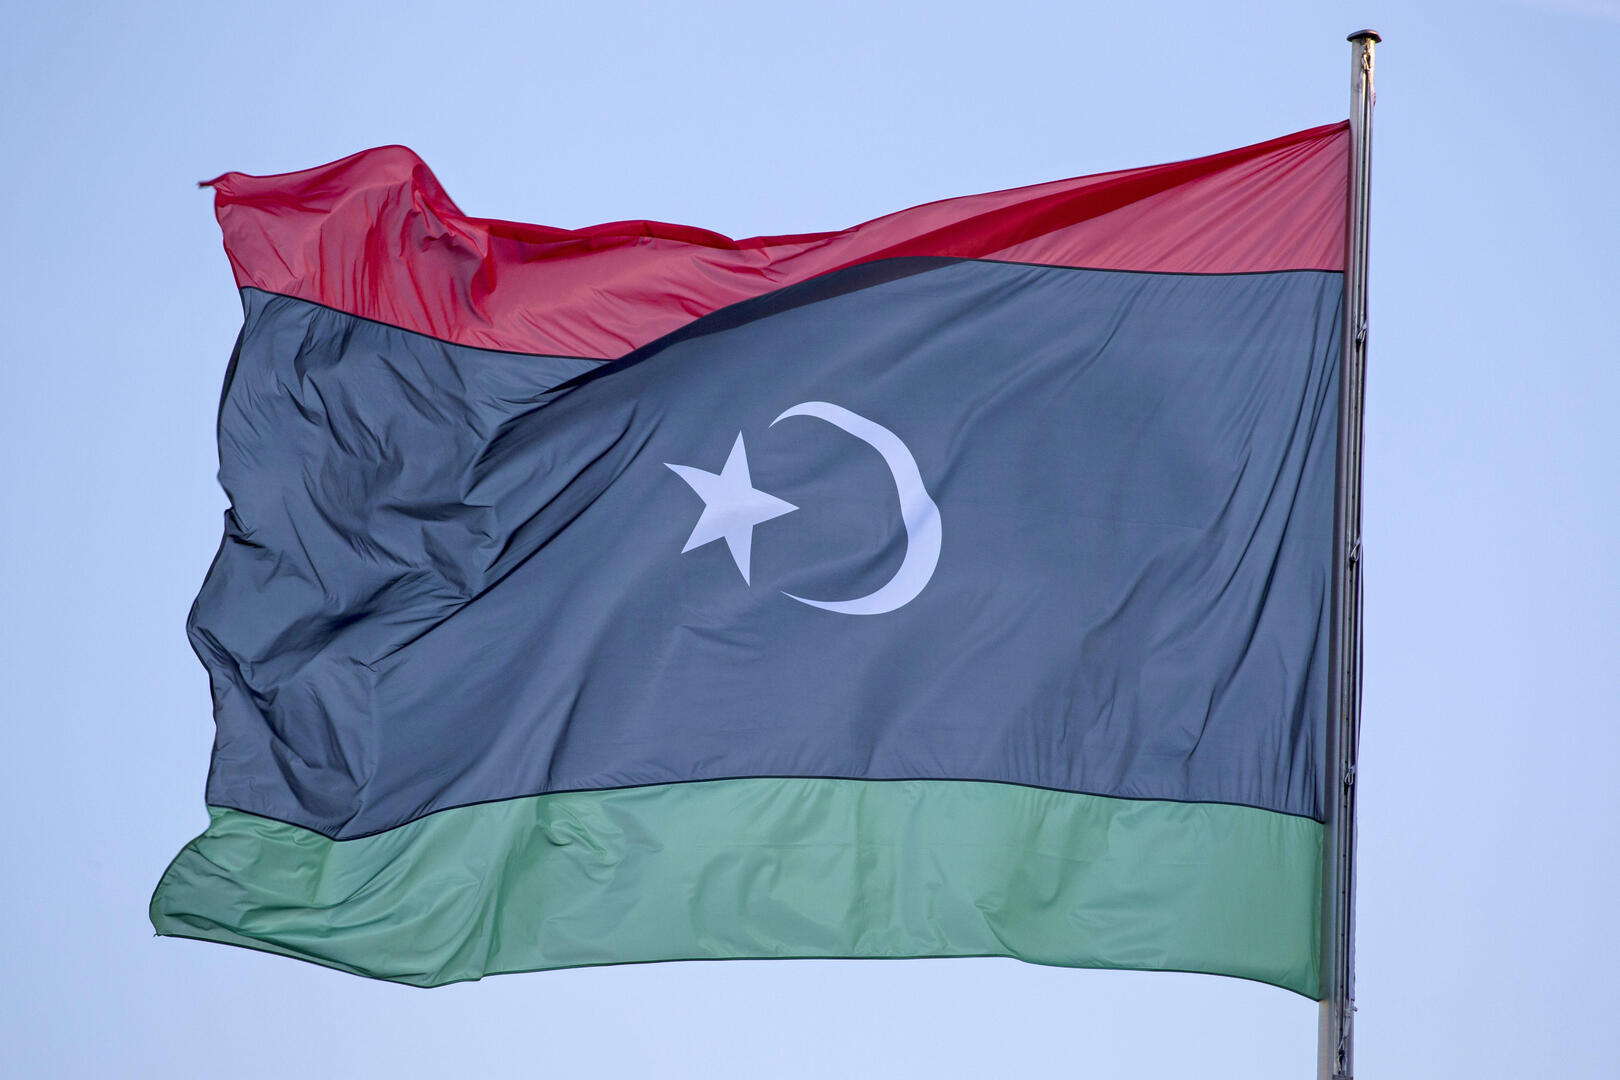 ليبيا.. مقتل 8 أطفال من عائلة واحدة بانفجار لغم في الطويبية